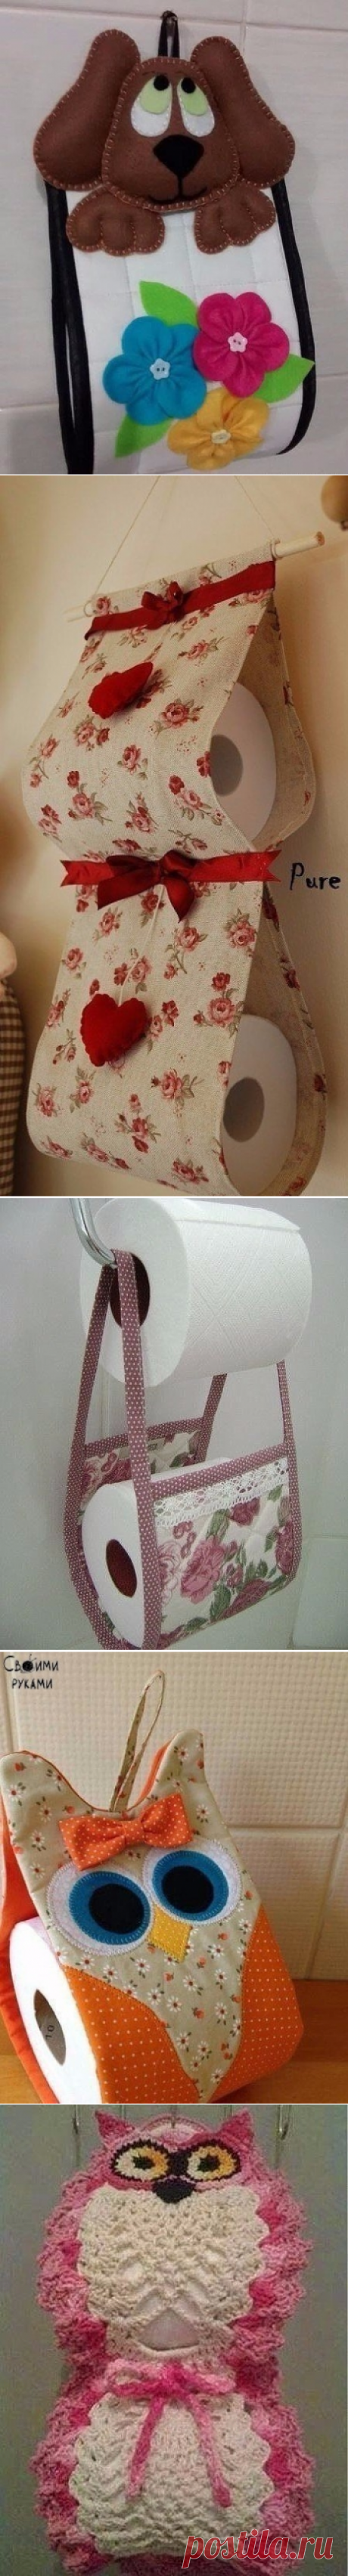 Храним туалетную бумагу красиво